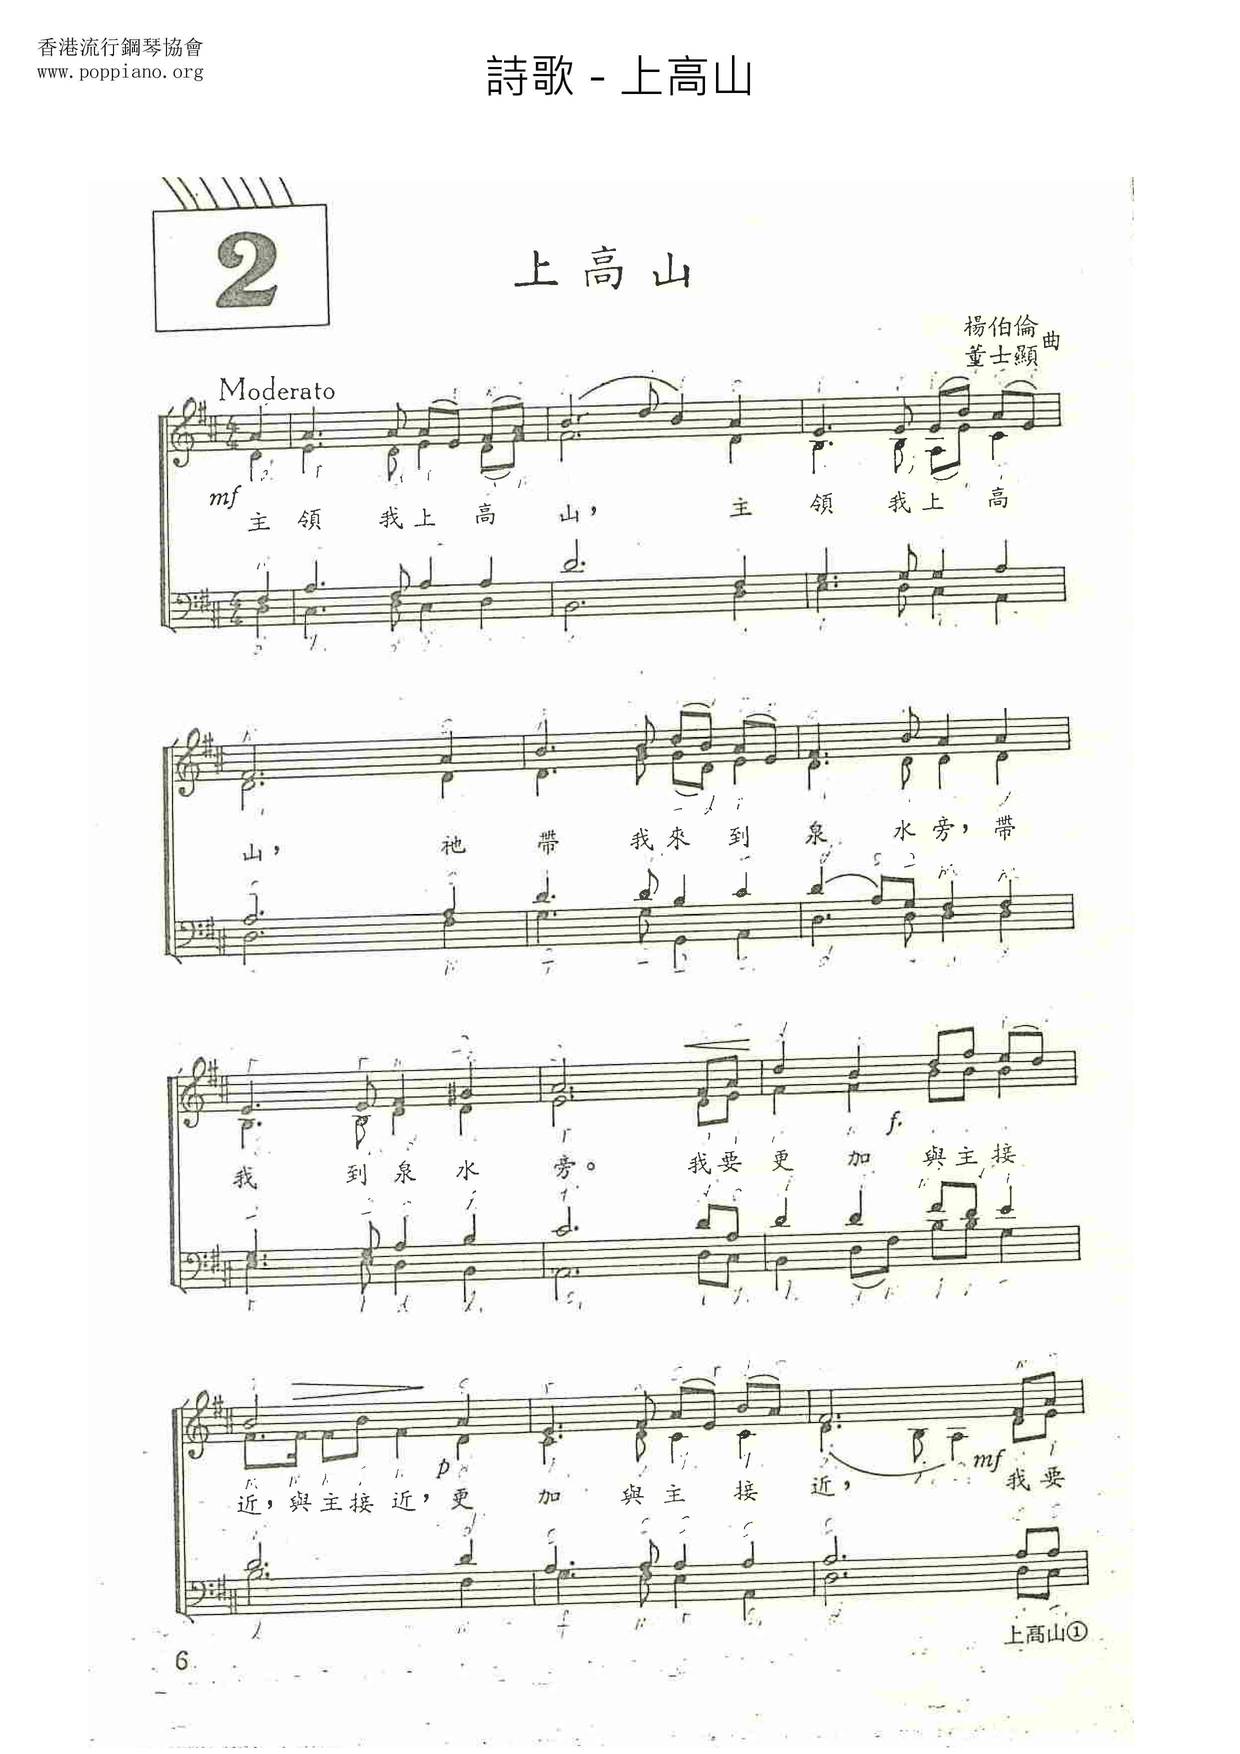 Shang Gaoshan Score